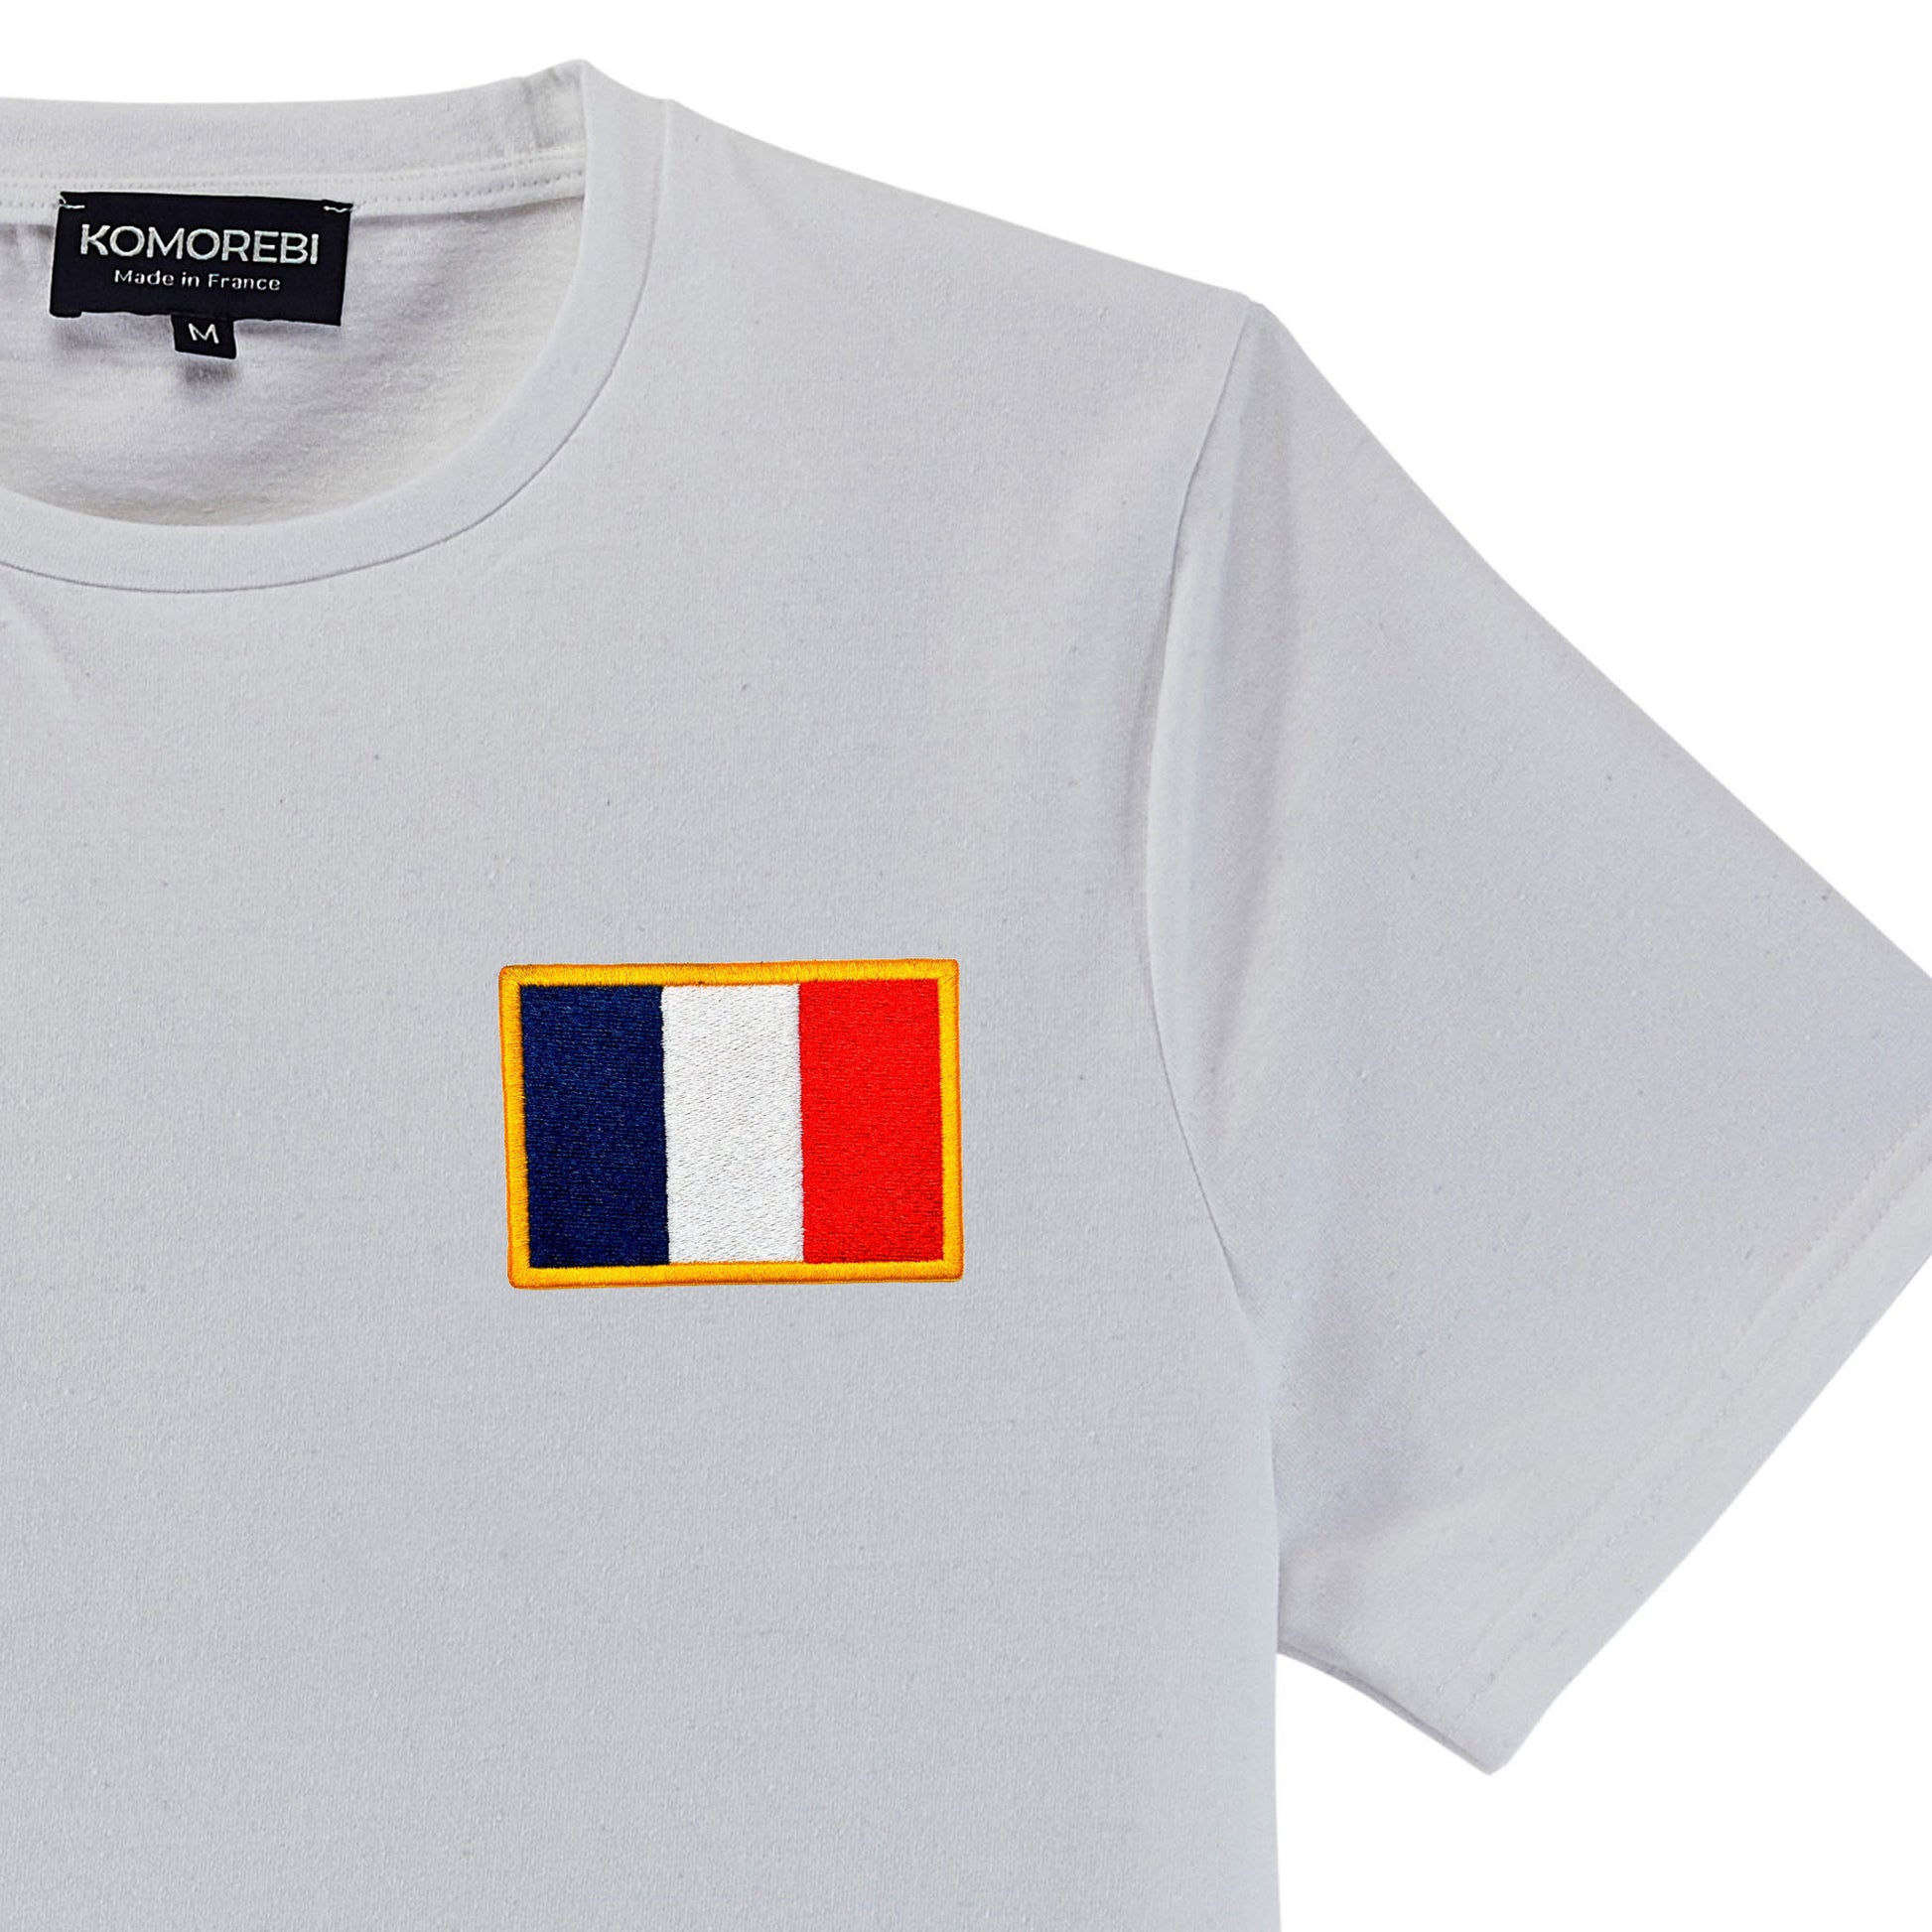 Tee-shirt blanc personnalisé | Couleurs Drapeau Français